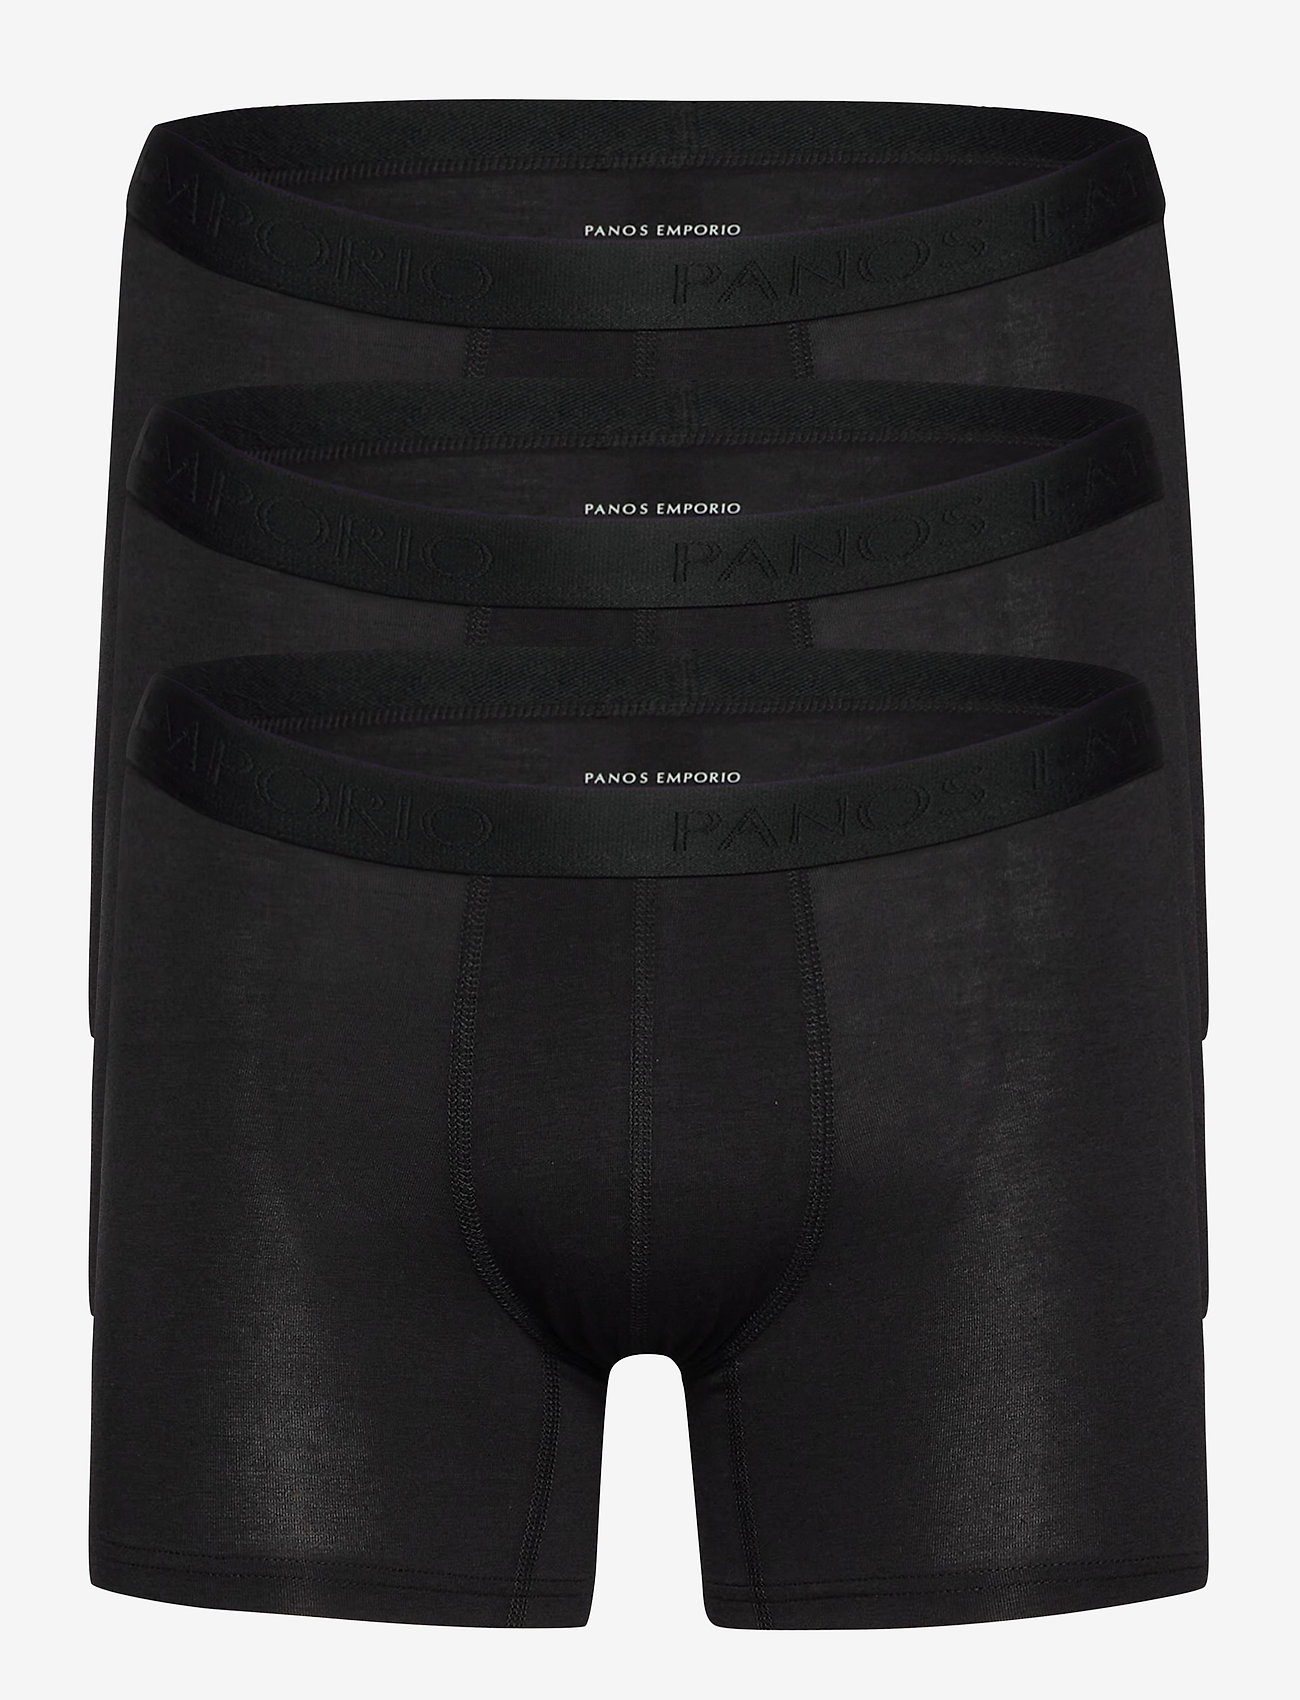 Panos Emporio - PANOS EMPORIO 3PK BASE BAMBOO BOXER - multipack underpants - black - 1